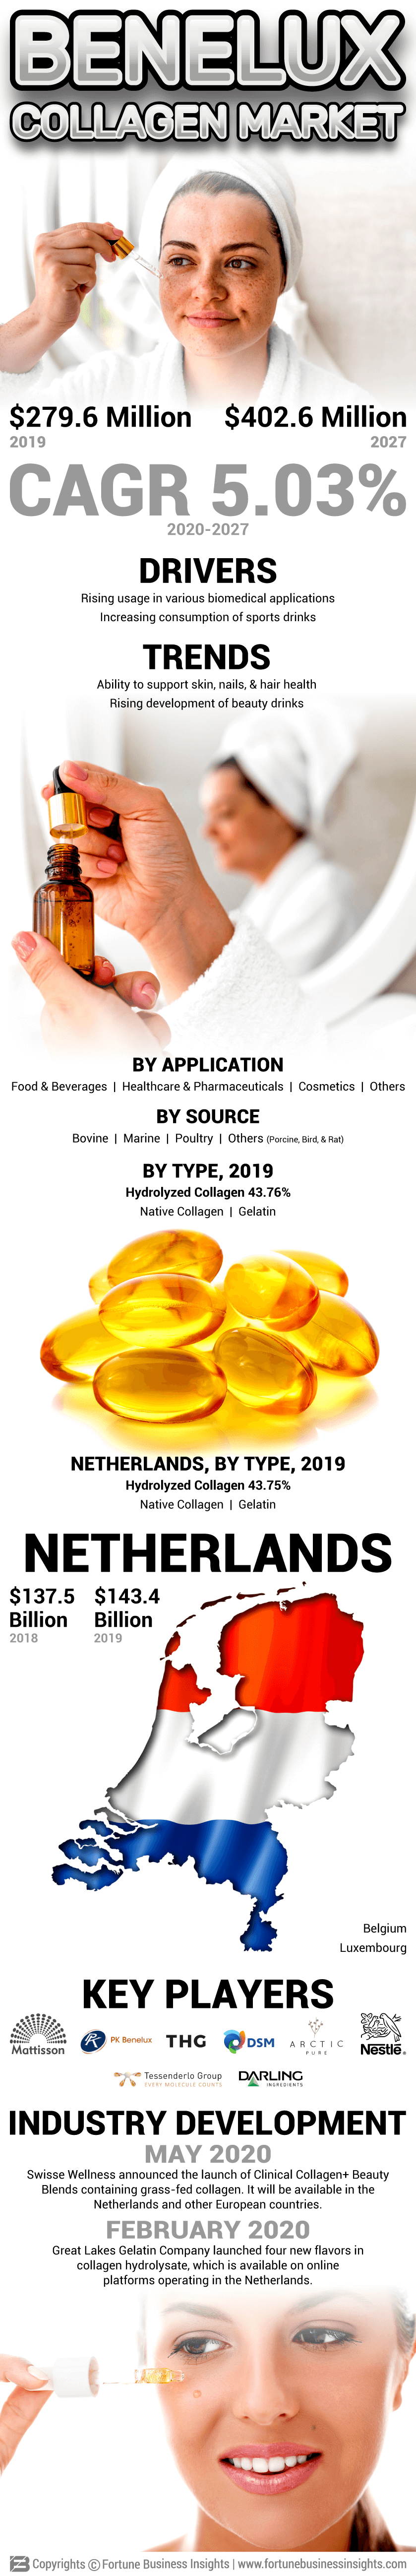 Benelux Collagen Market